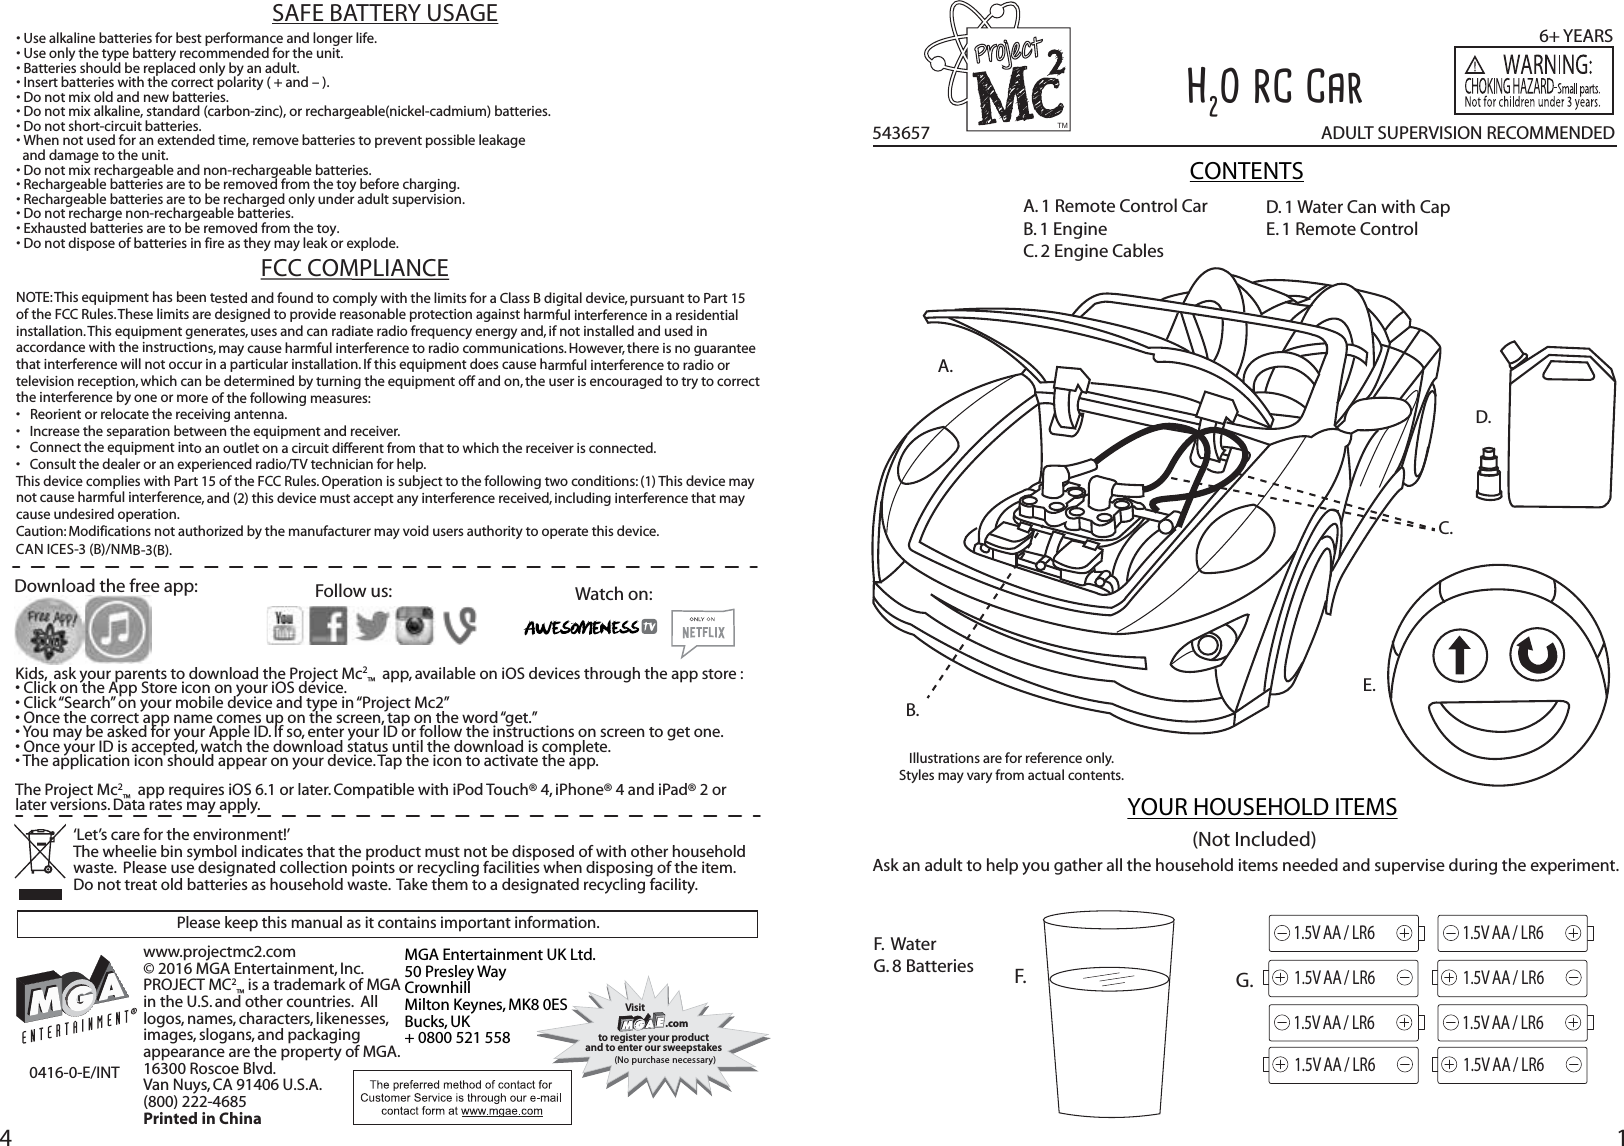 MGA Entertainment 542469TX Project Mc2 H2O Powered RC Car User Manual